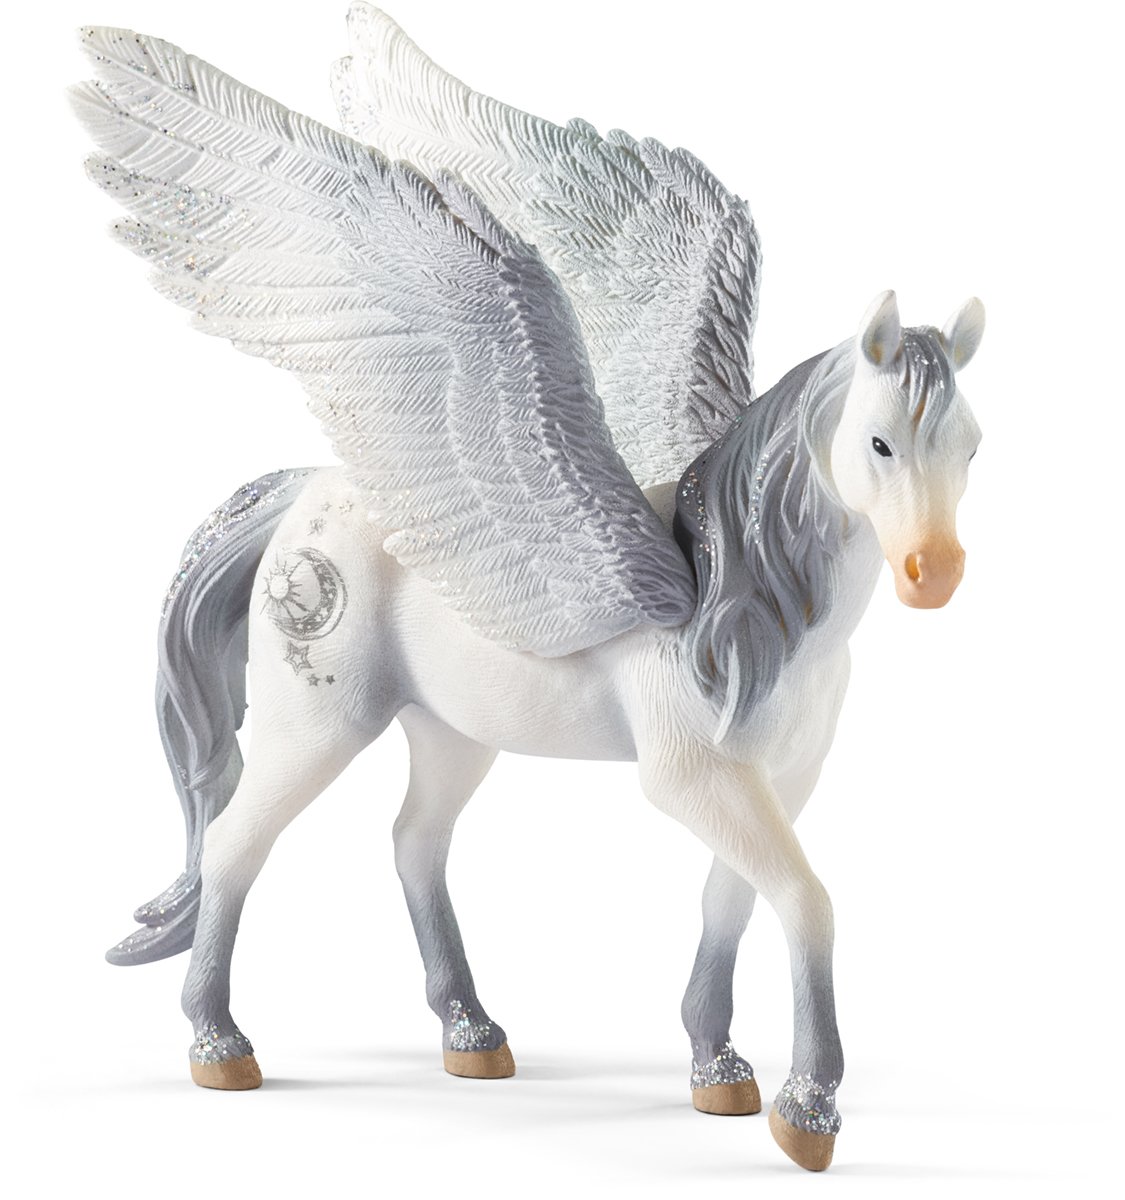 Schleich Pegasus Figurine